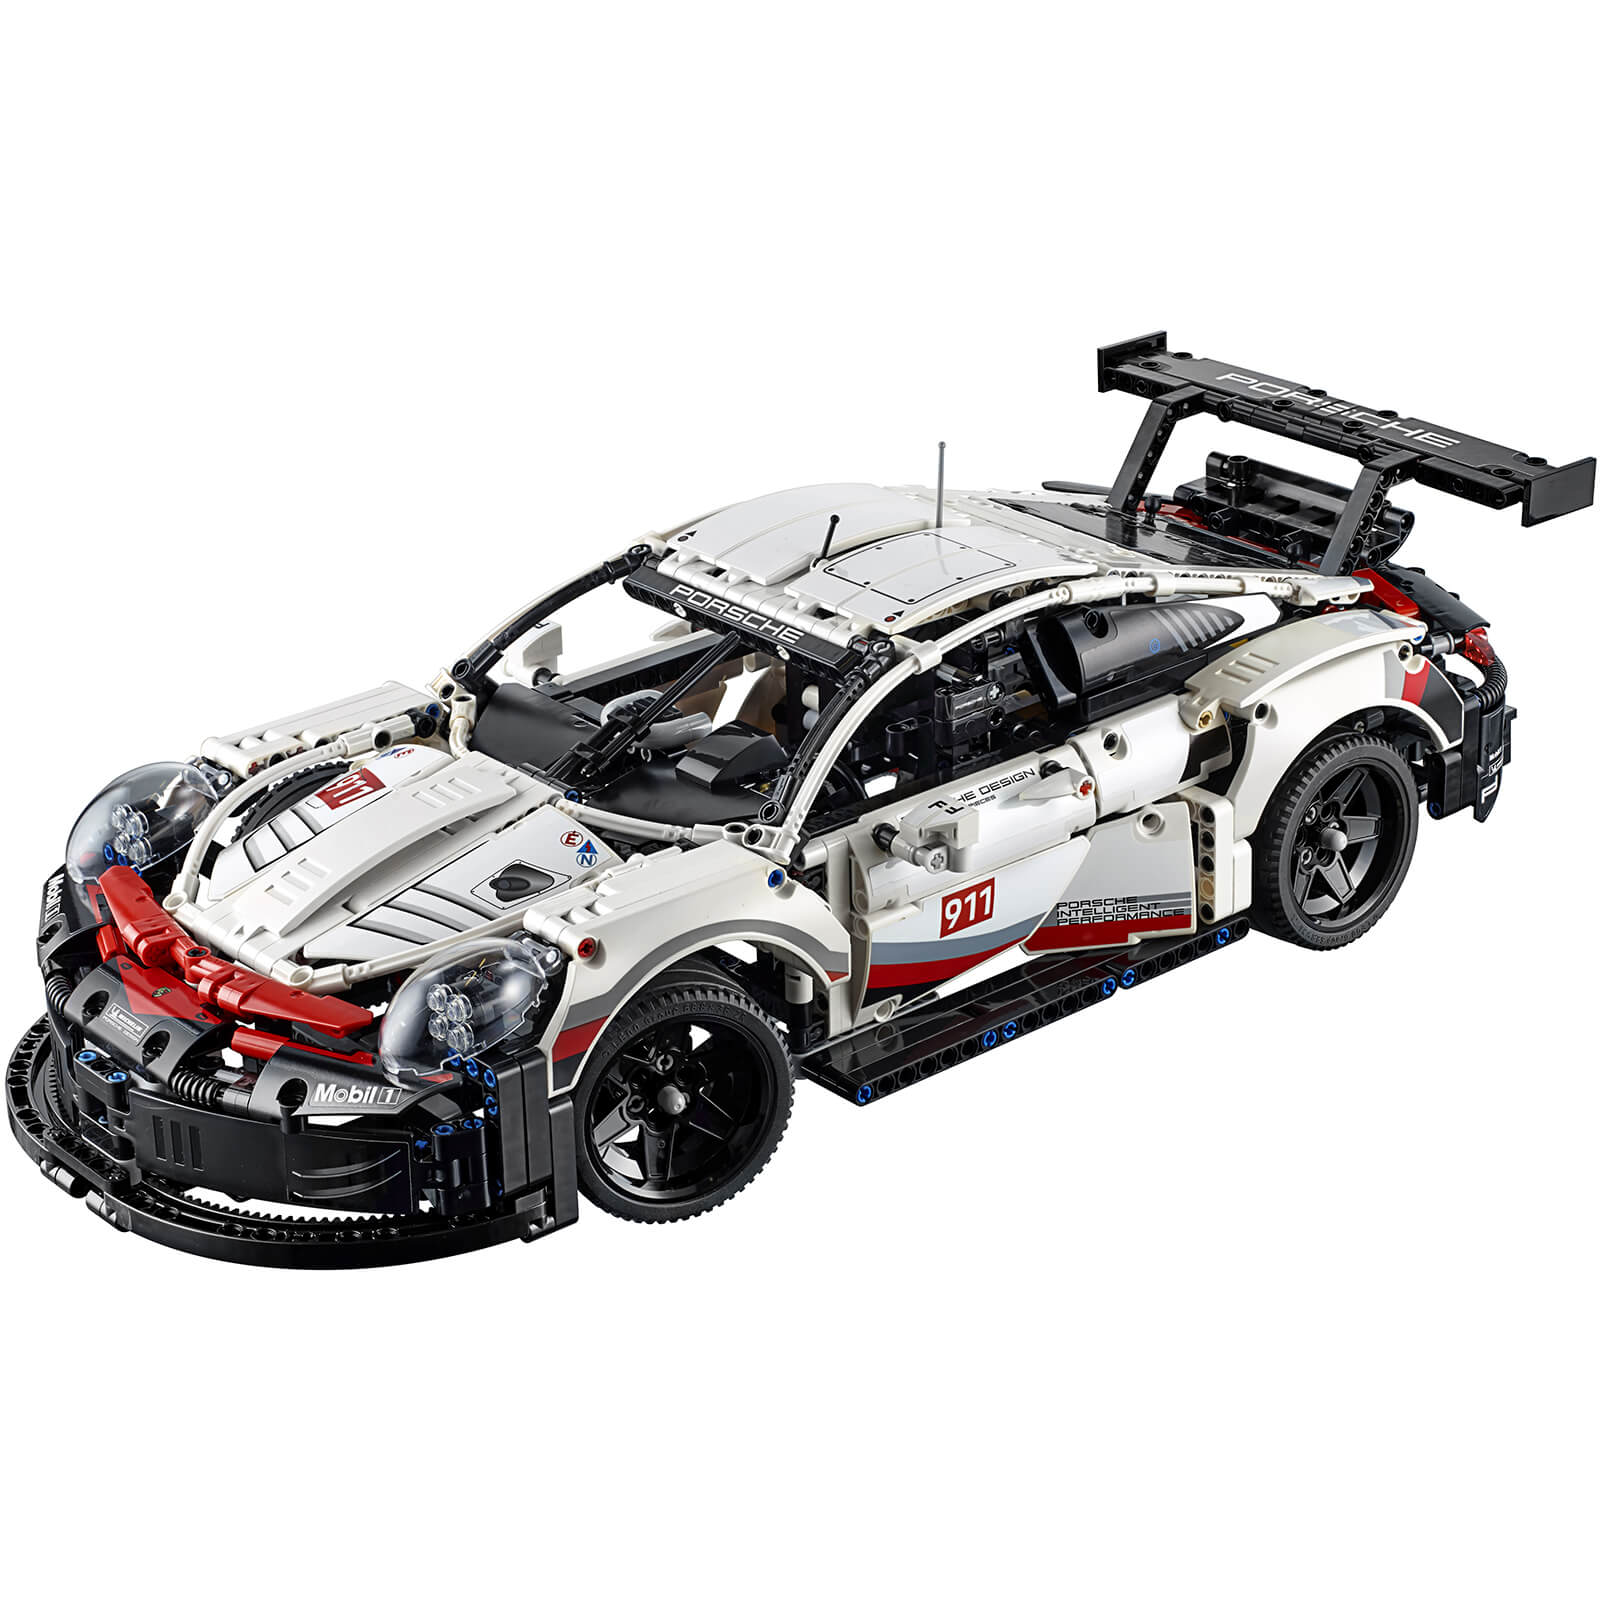 LEGO 42096 Technic Porsche 911 RSR, Rennauto Bausatz für Fortgeschrittene, exklusives Sammlerstück 2